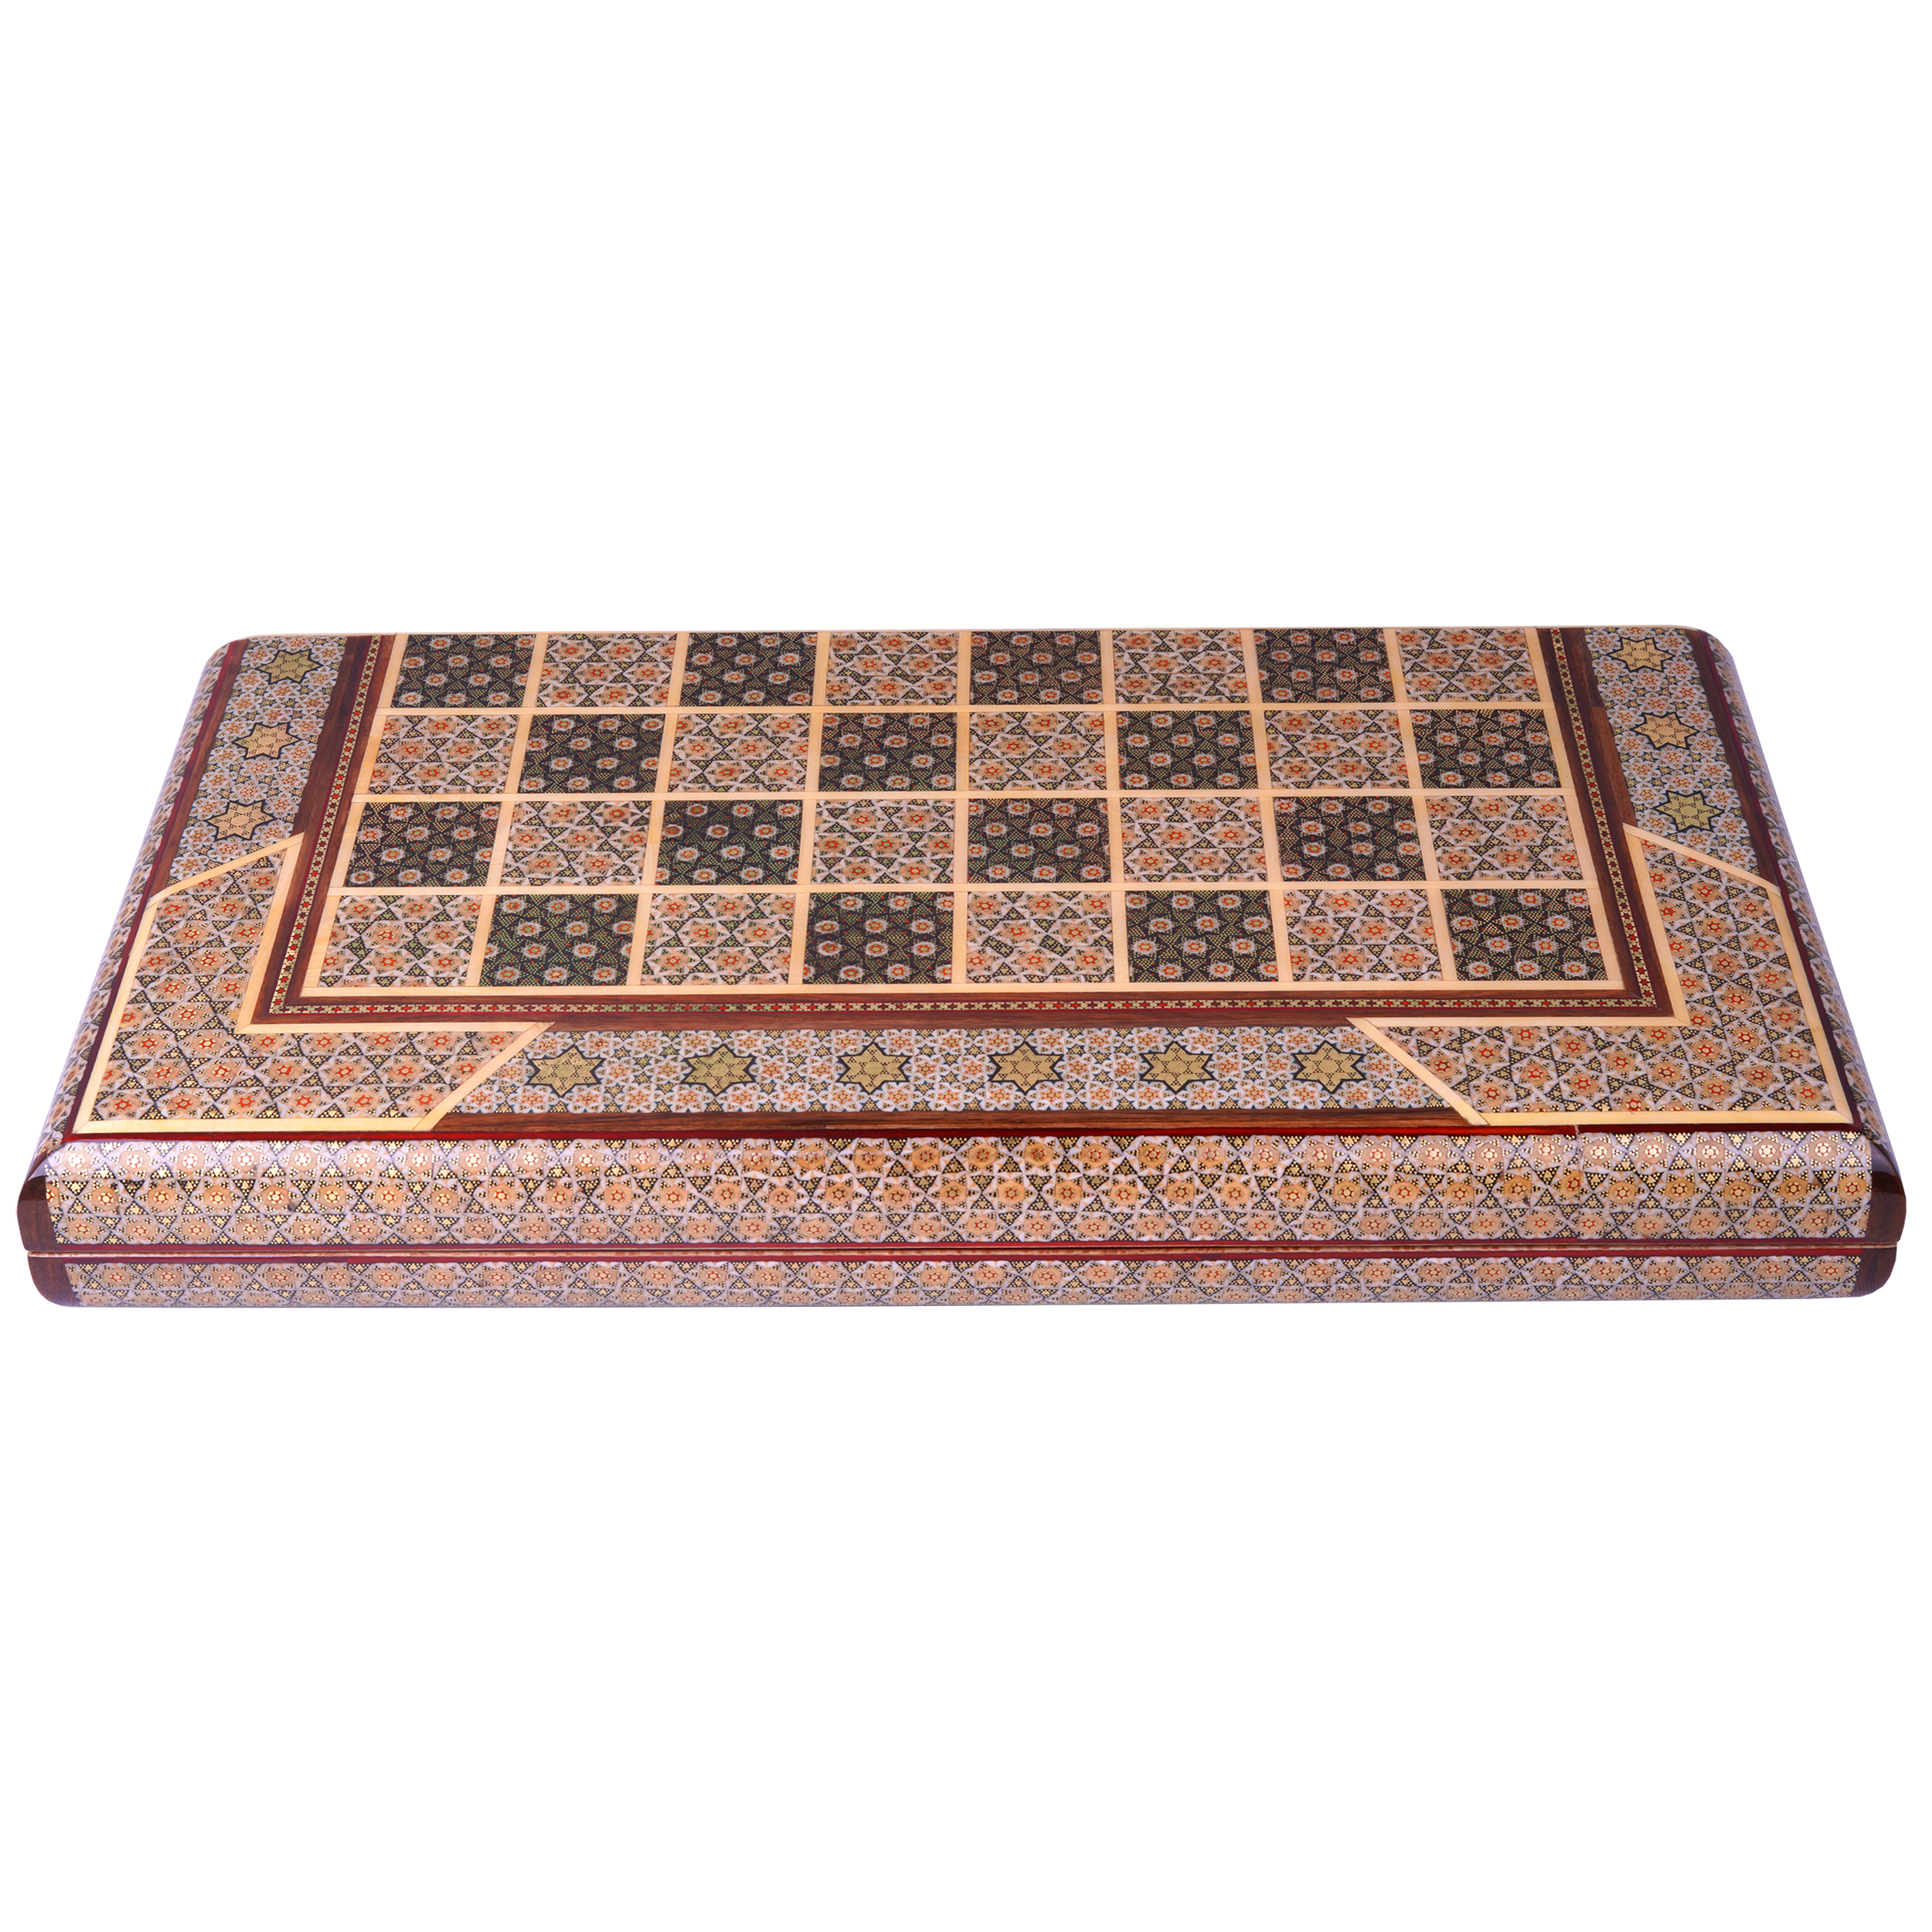 Inlay handicraft chessboard, code112